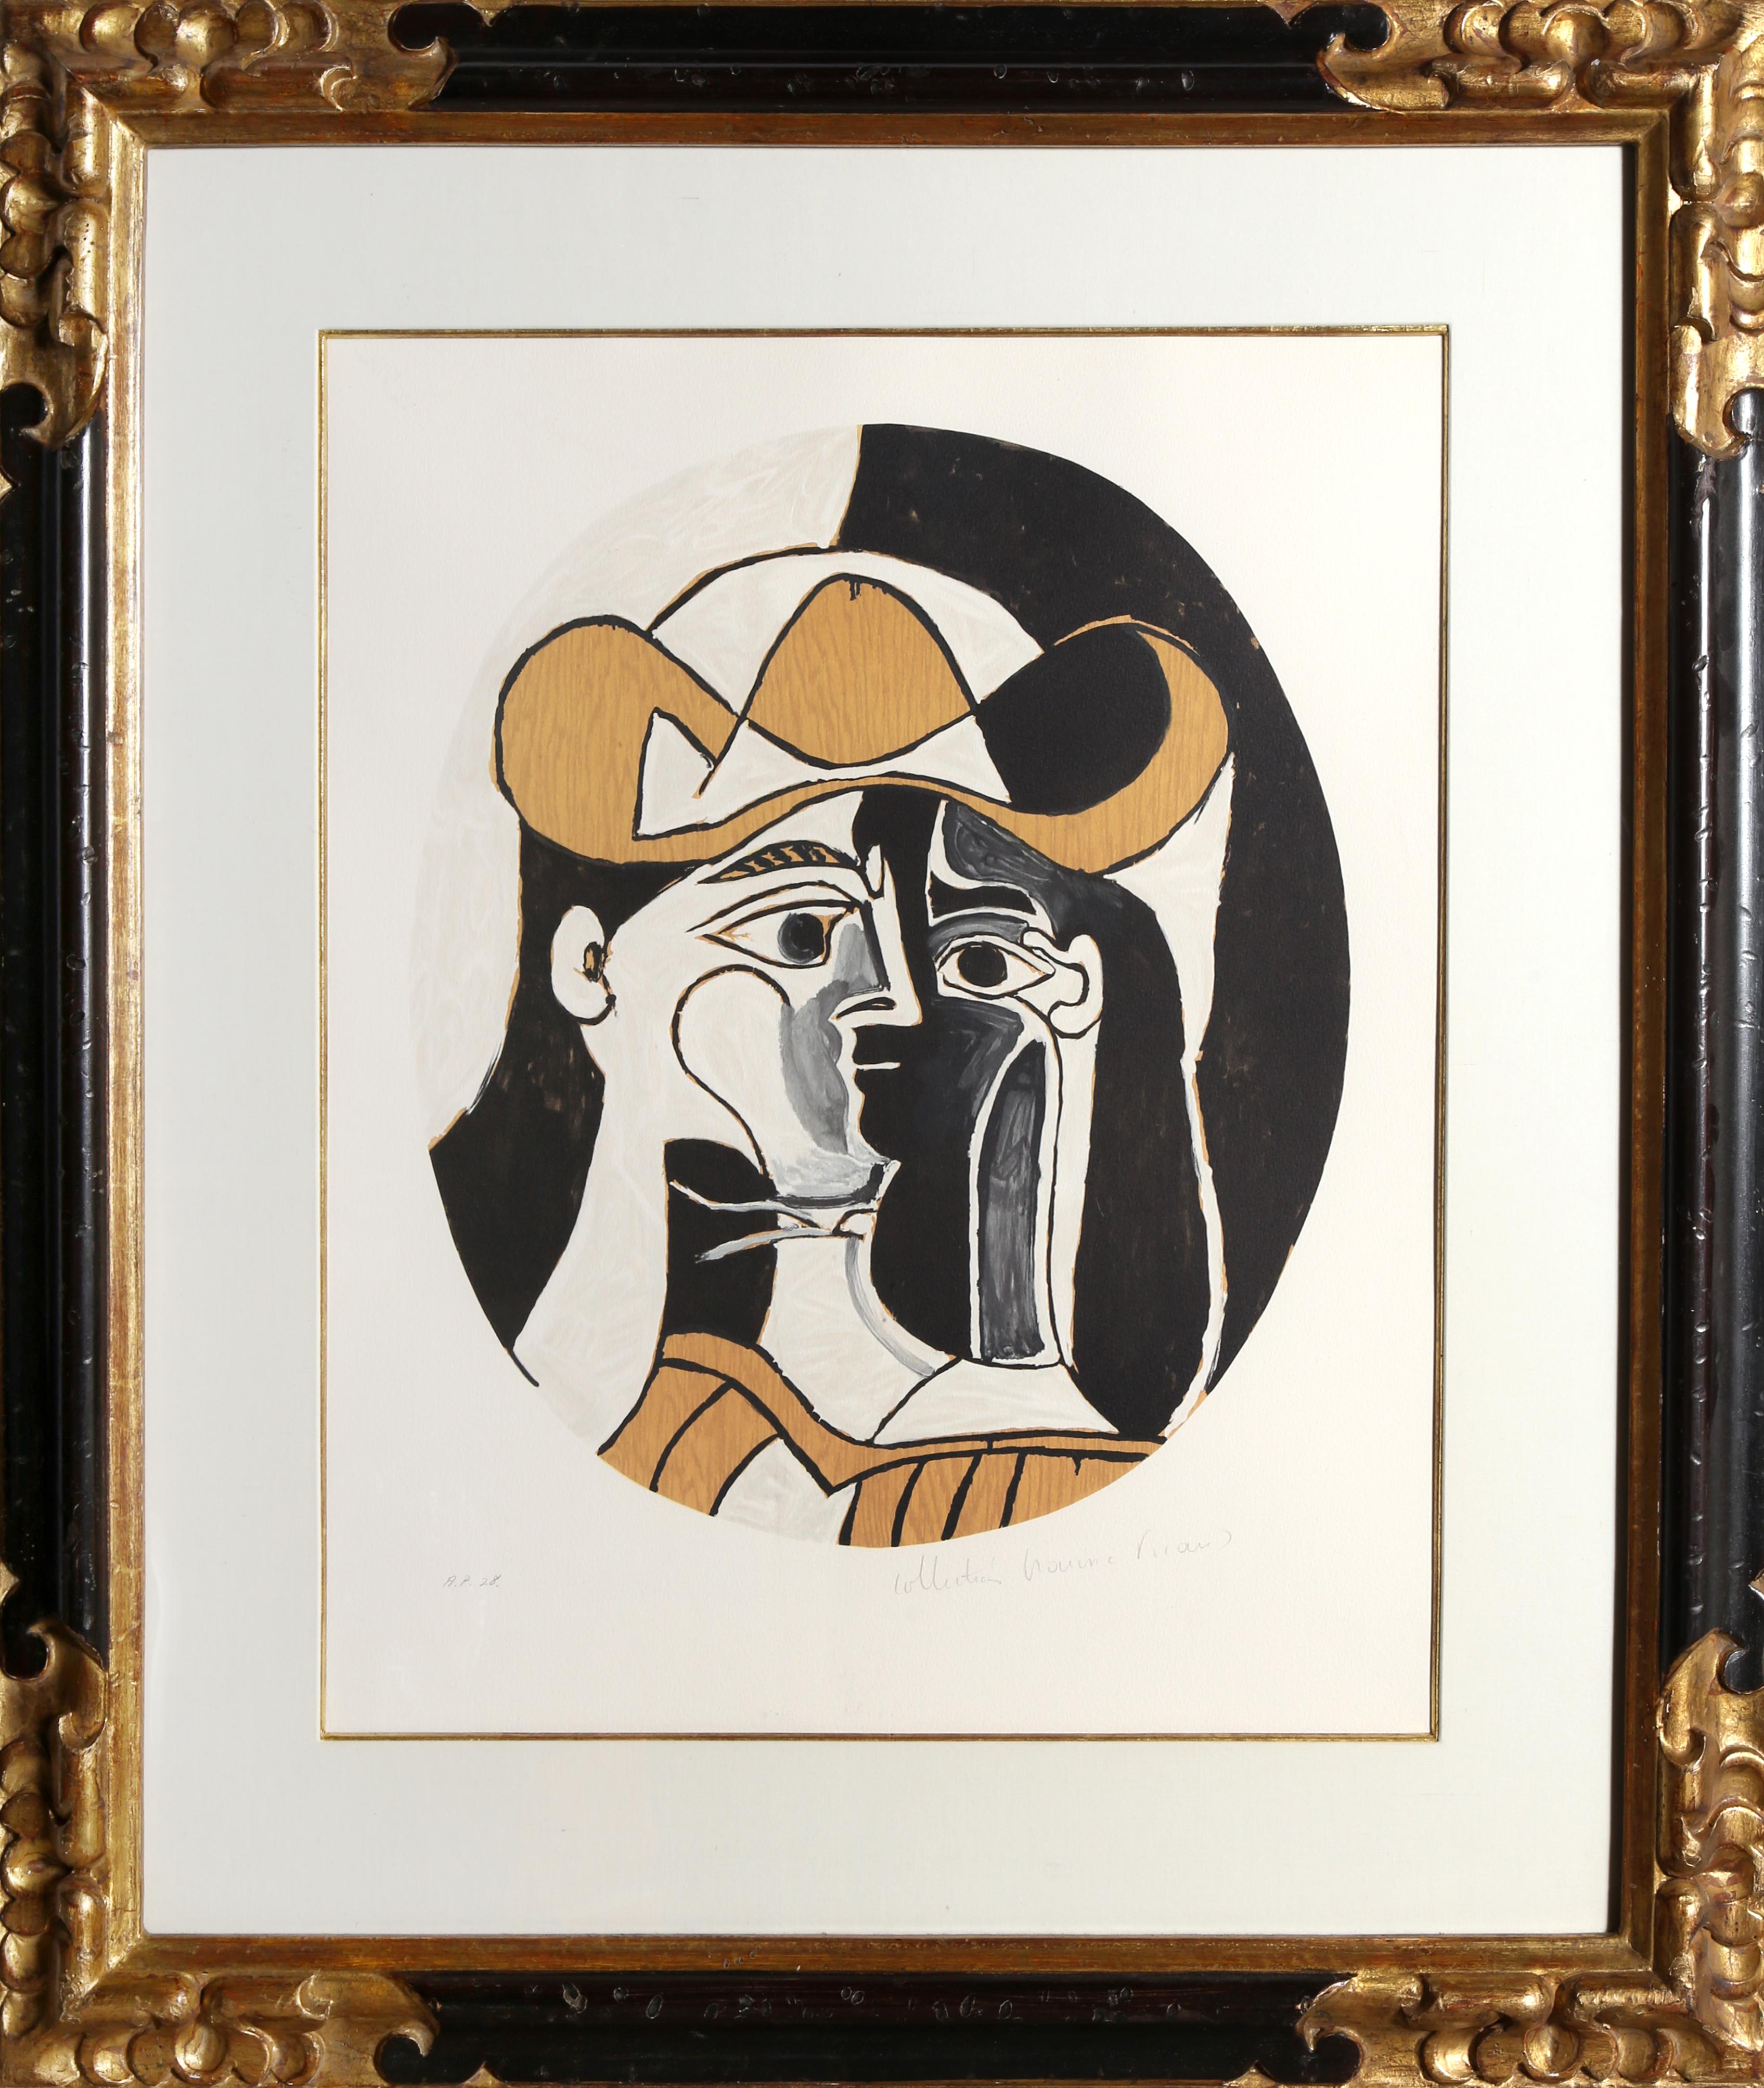 Une lithographie de la Collection S de Marina Picasso d'après le tableau de Pablo Picasso "Femme au Chapeau".  La peinture originale a été achevée en 1961. Dans les années 1970, après la mort de Picasso, Marina Picasso, sa petite-fille, a autorisé